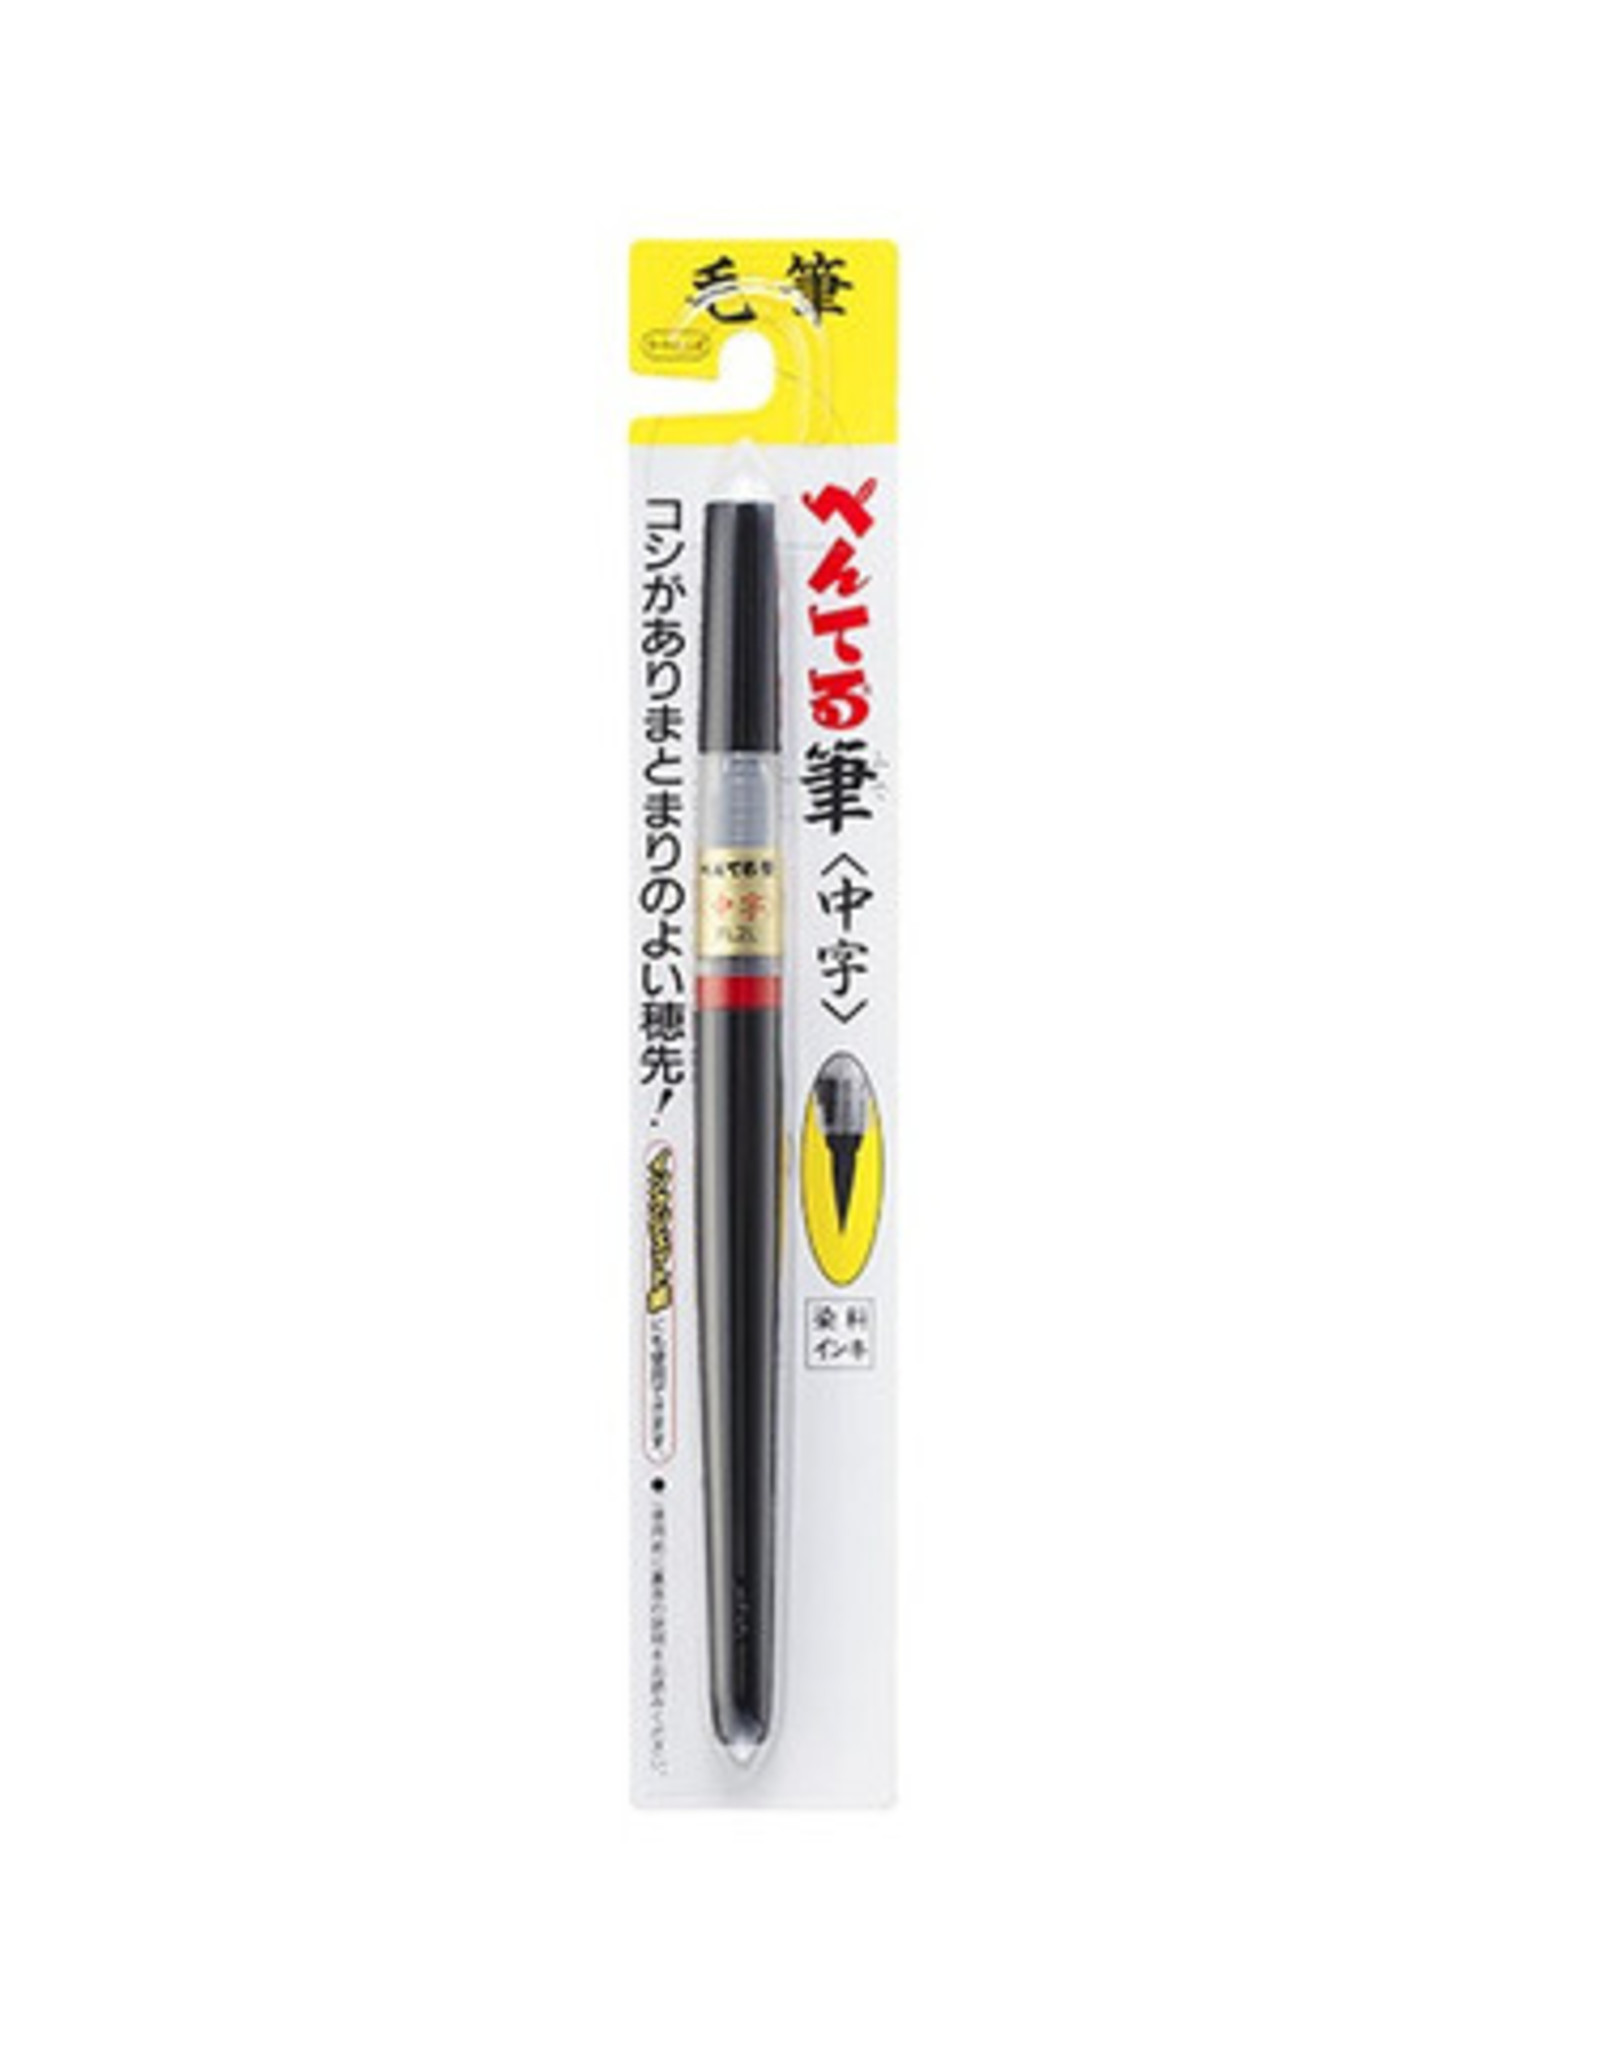 Pentel Pentel Fude Standard Brush Pen